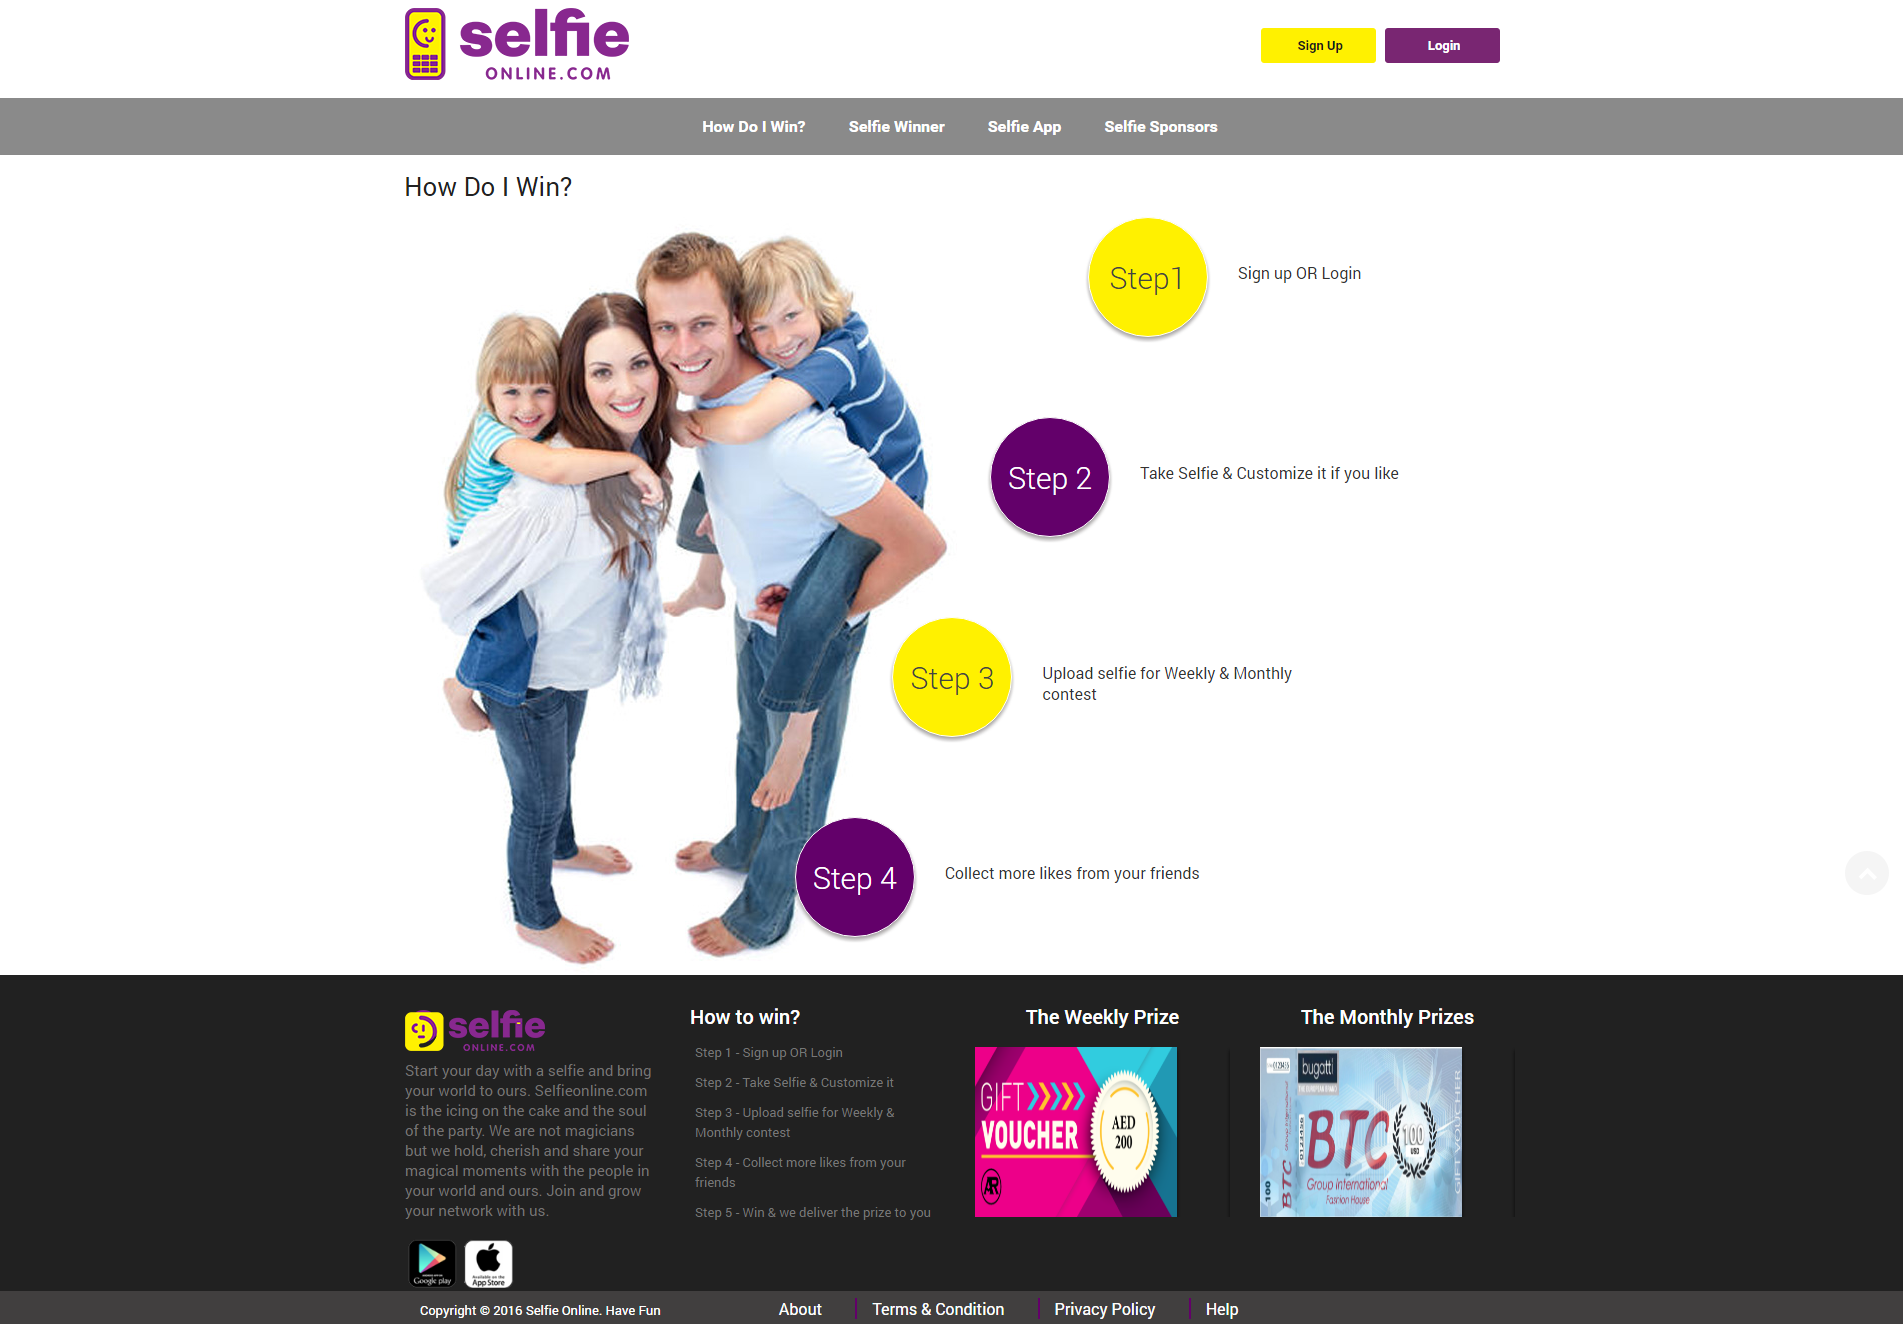 Ask Online Solutions Portfolio Selfie Online